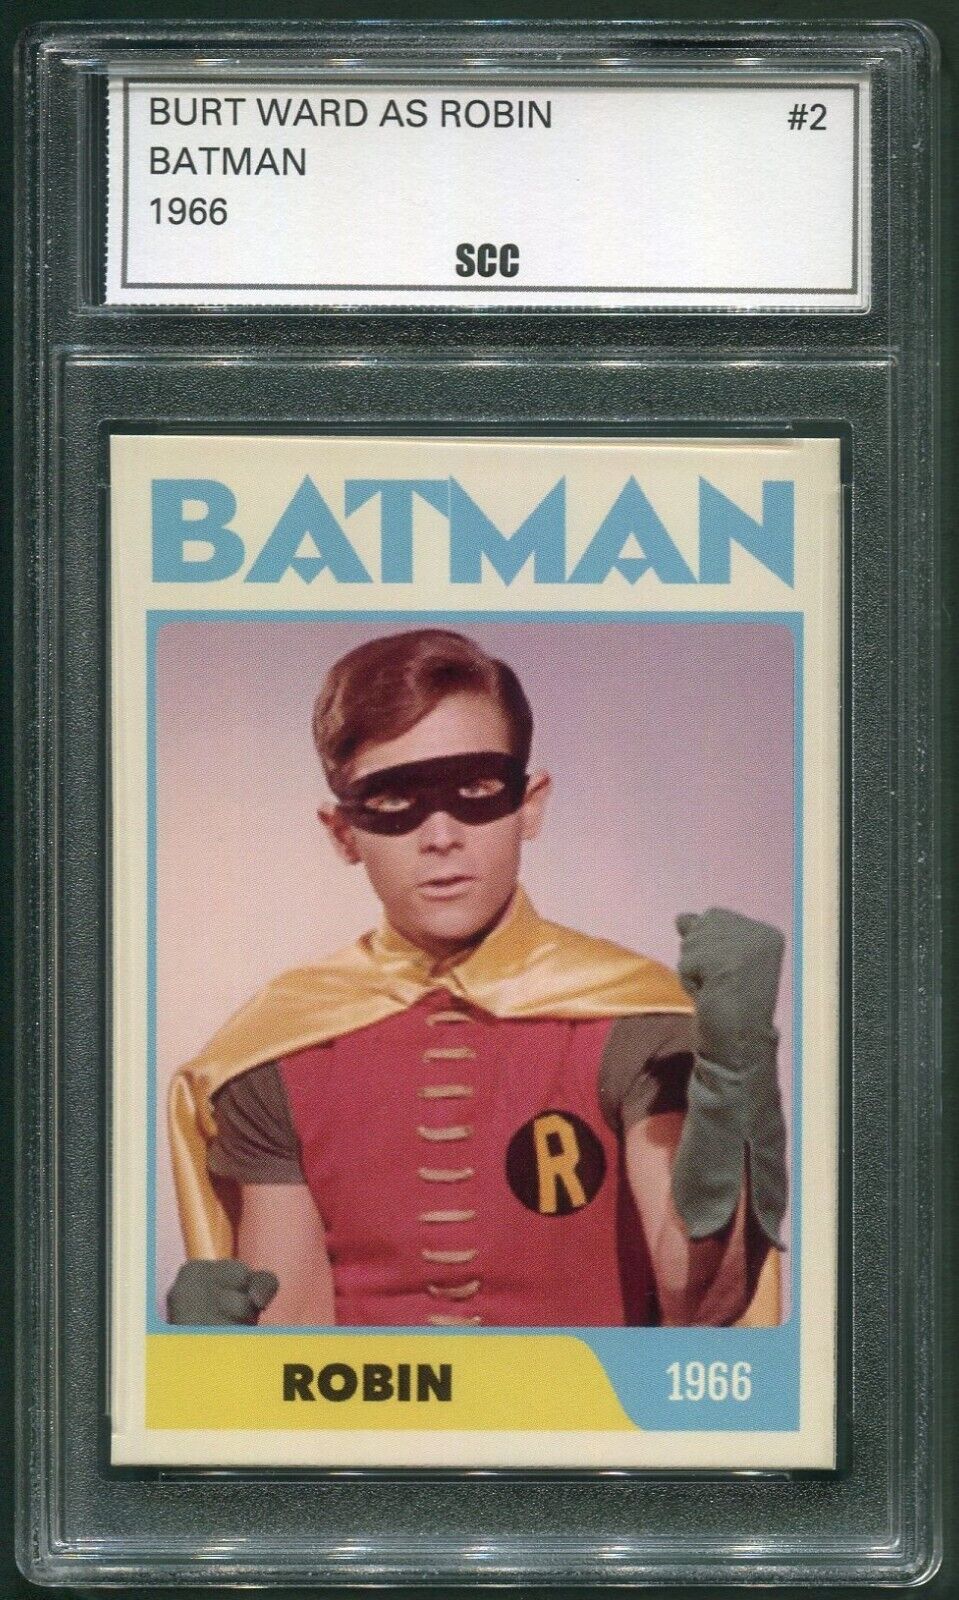 Custom 1966 Batman Burt Ward As Robin Trading Card #2